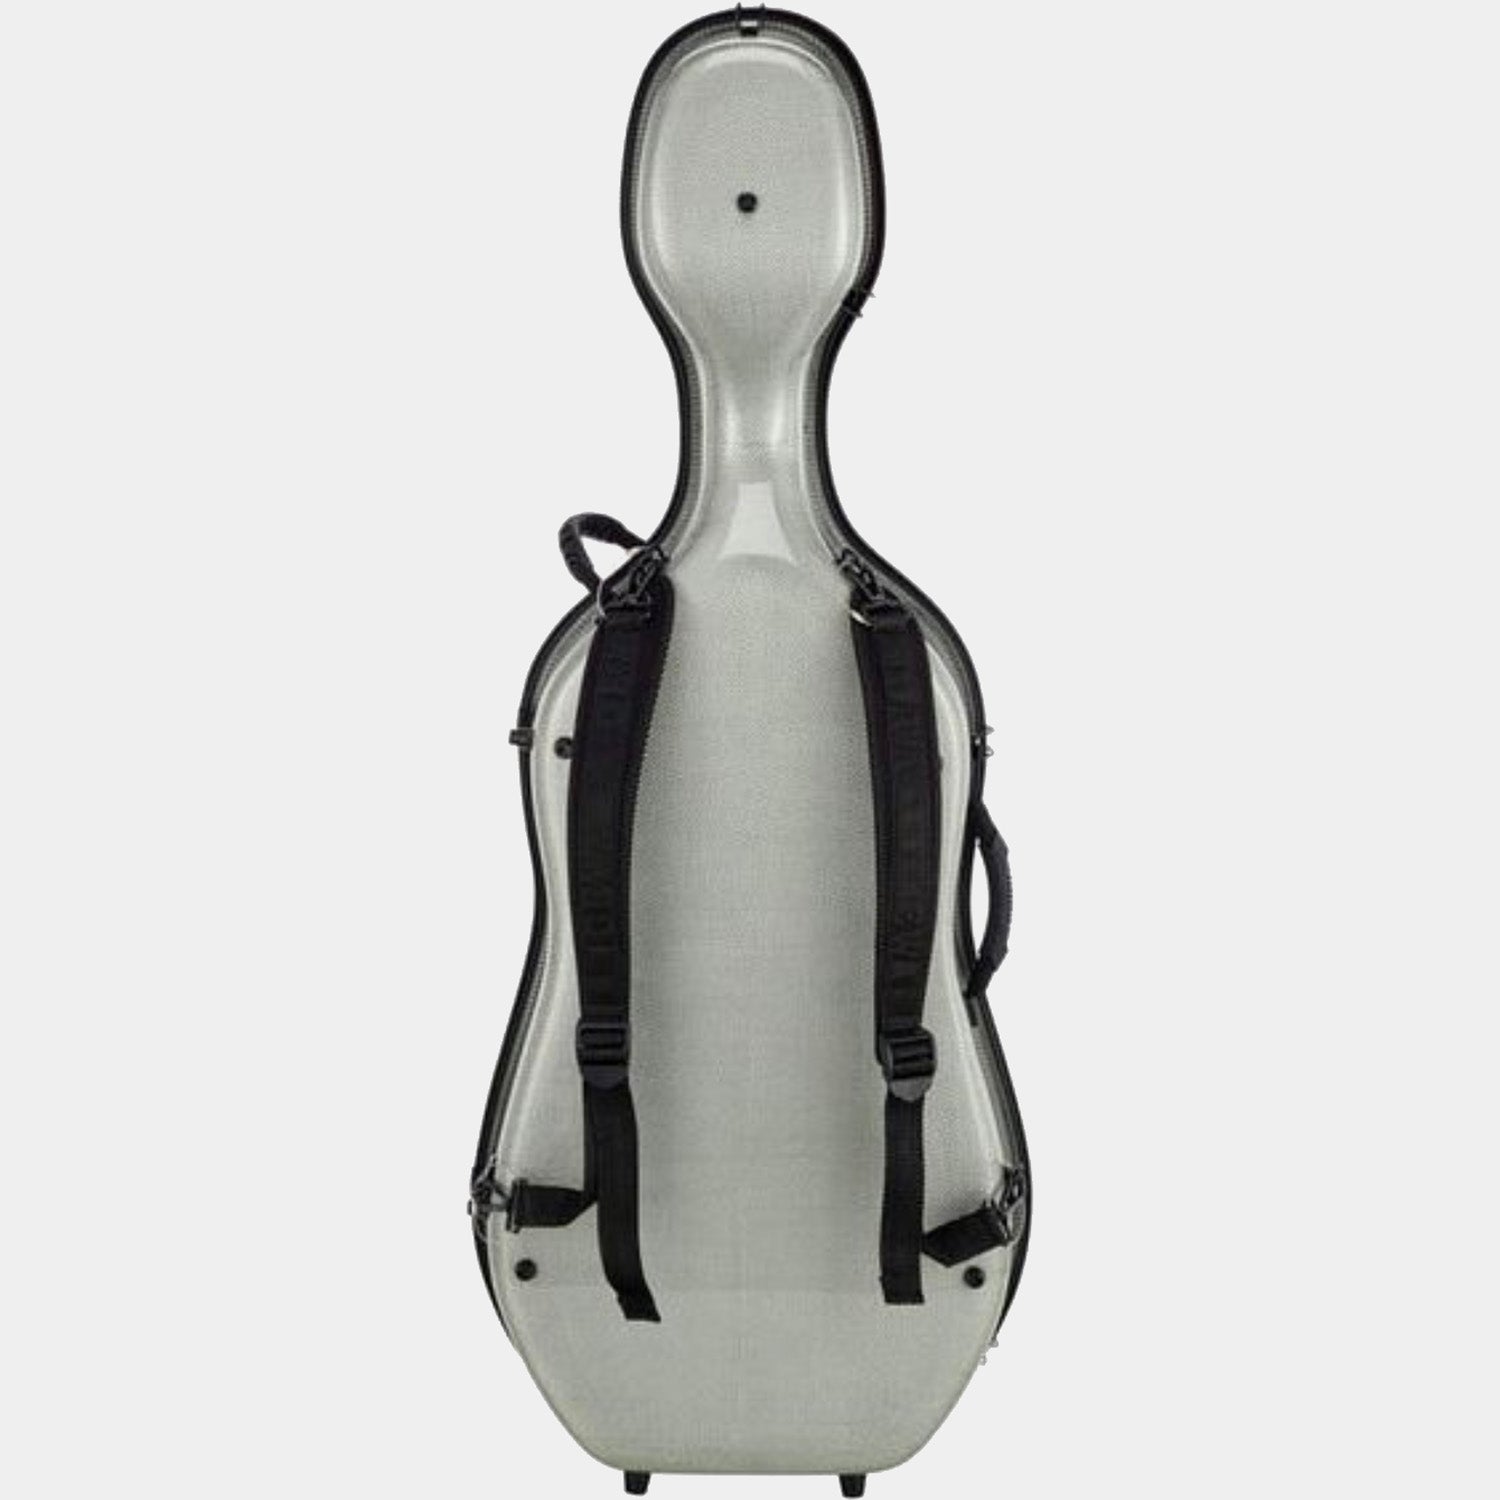 Idea Titanium Carbon 3.3 cello case